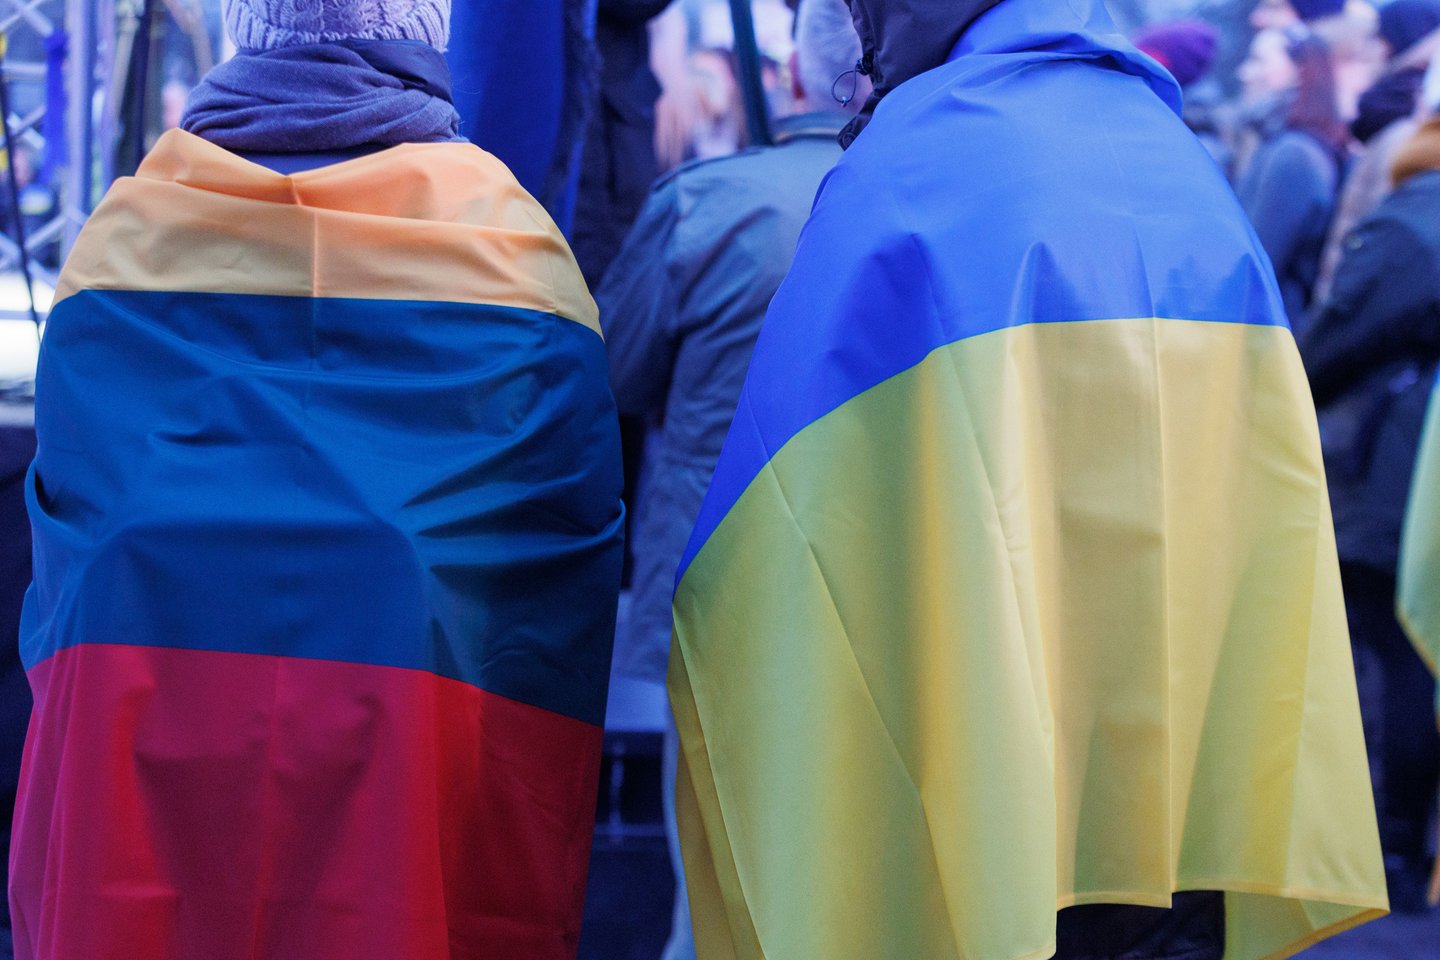 Nors nuo karo pradžios į Lietuvą pabėgę ukrainiečiai jau sudaro daugiau nei 2 procentus visų šalies gyventojų, prognozuojama, kad jau netrukus karo pabėgėlių skaičius gali ženkliai išaugti.<br>T.Bauro nuotr.